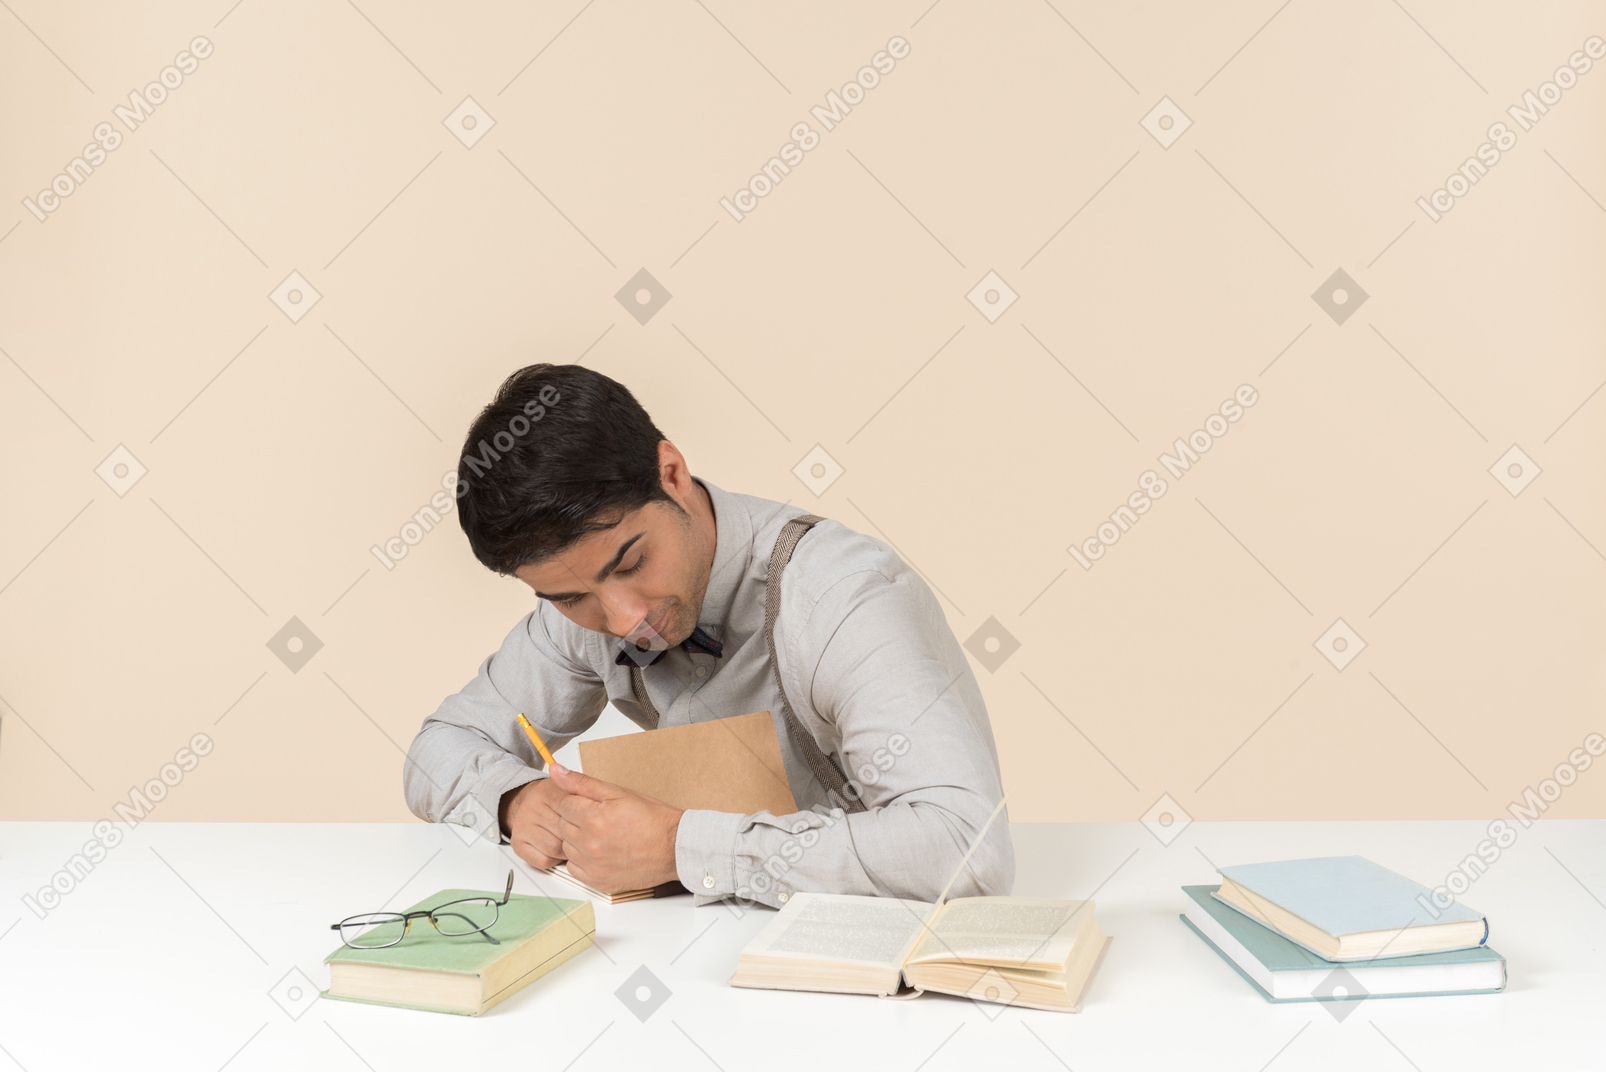 Junger erwachsener student, der am tisch sitzt und etwas in das buch notiert